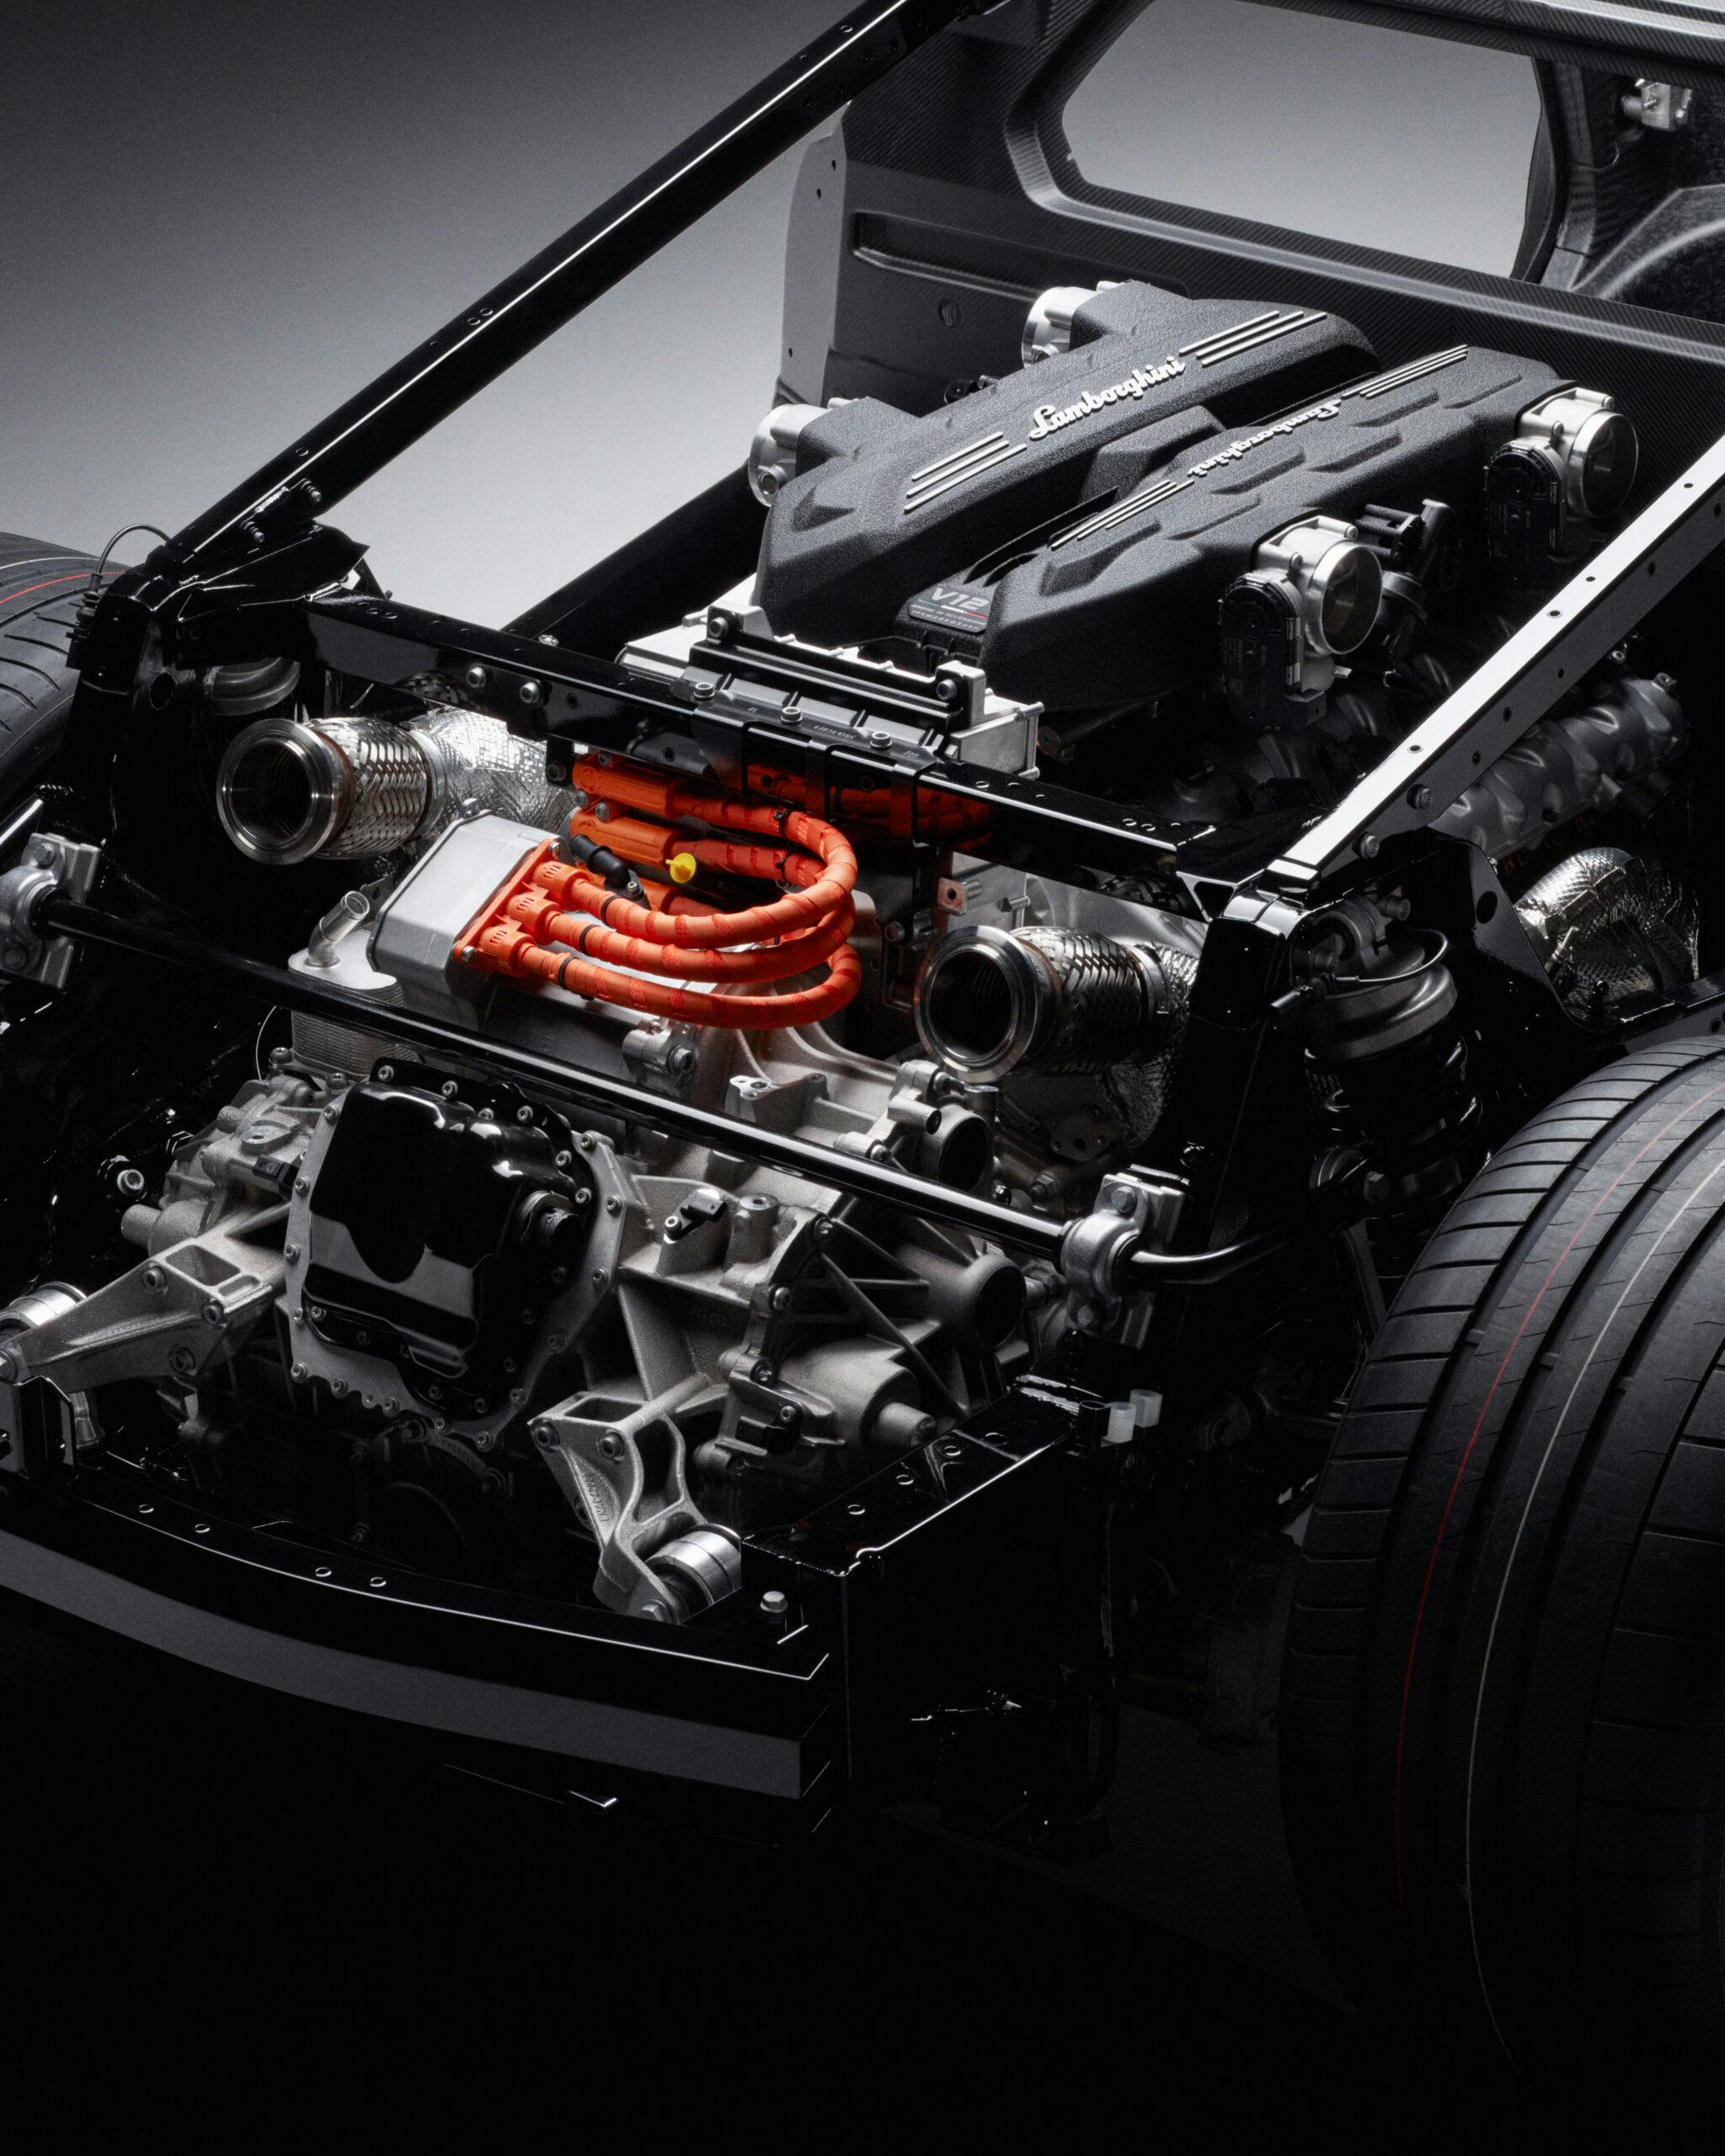 Lamborghini LB744 hybrid plug in supercar V-12 engine L545